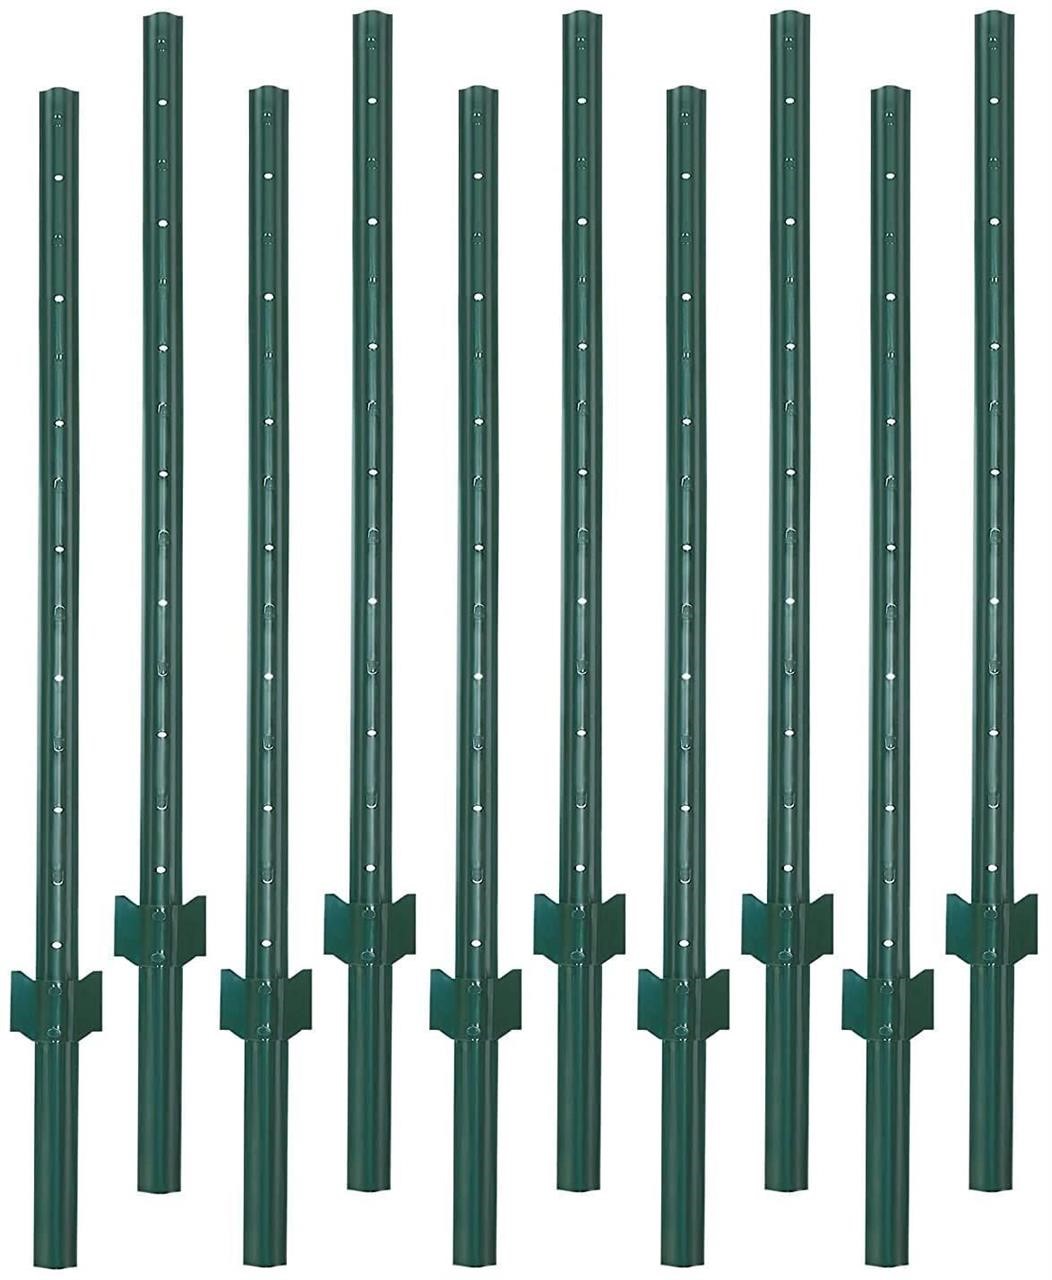 $105 - VASGOR 6 Feet Sturdy Duty Metal Fence Post